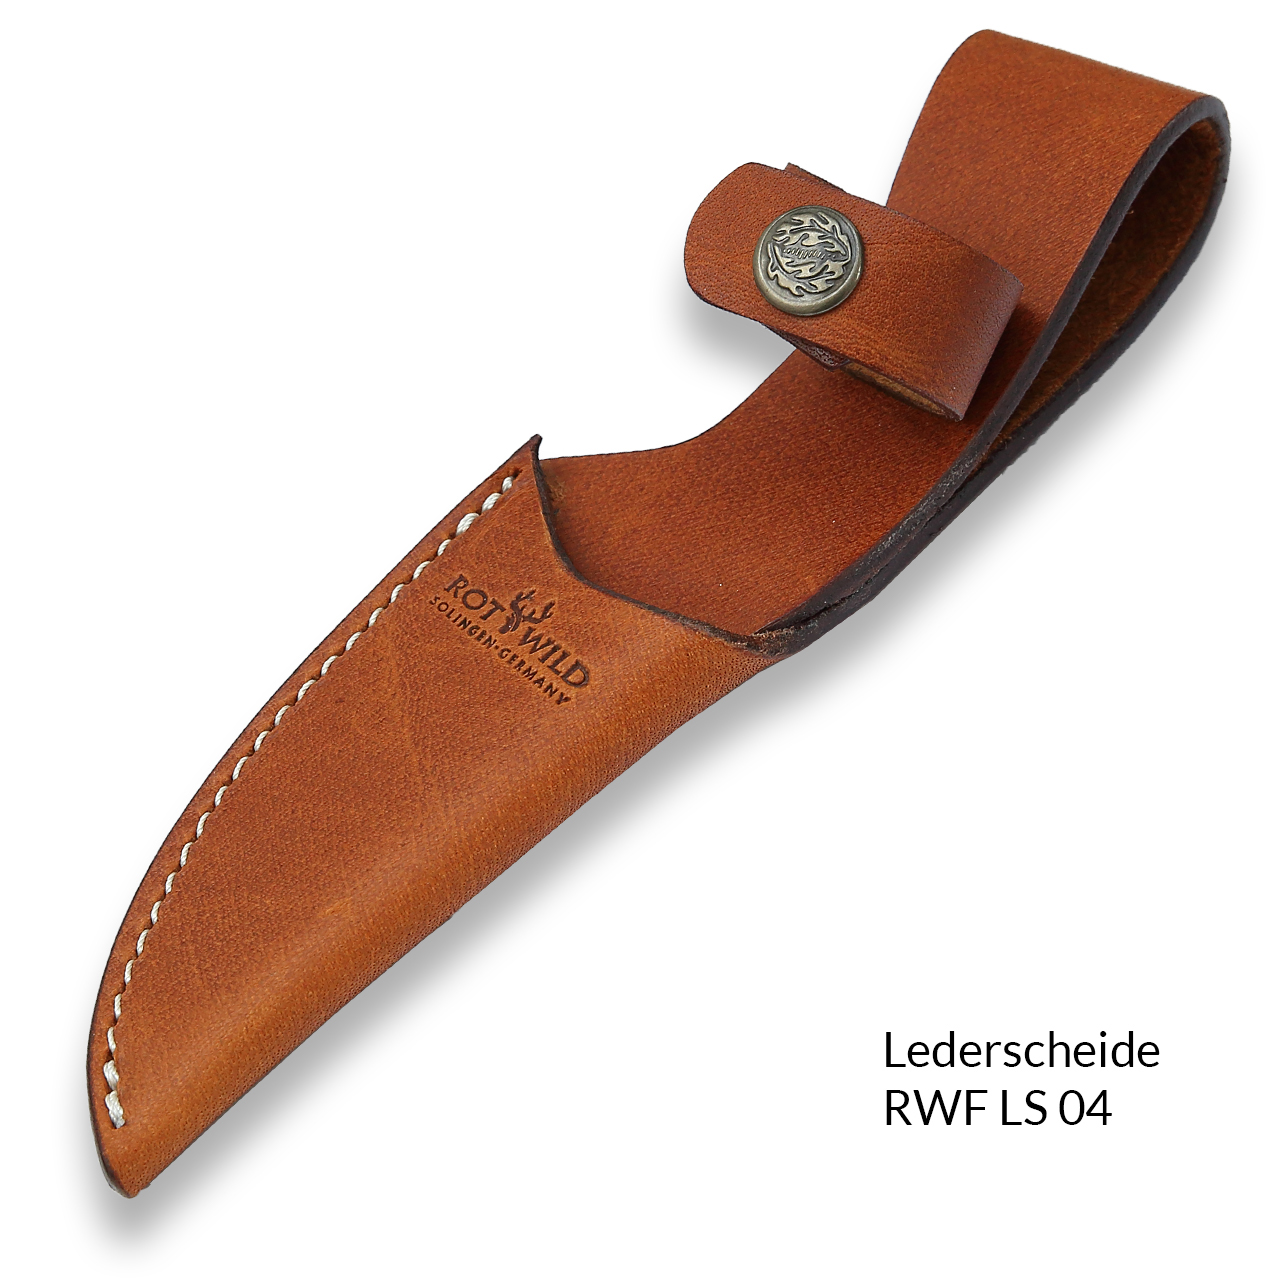 Leather sheath RWF 04